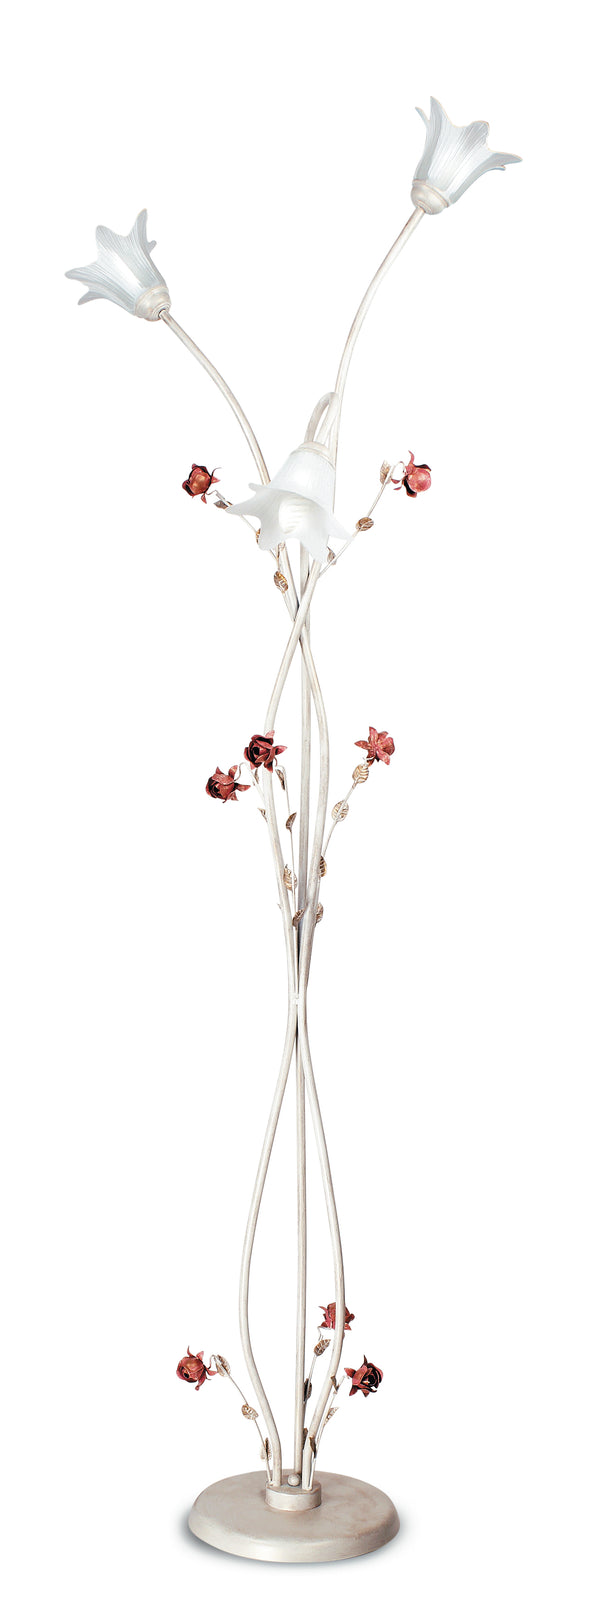 online Lampadaire élégant Rose blanc rouge diffuseurs en verre métal lampadaire classique E14